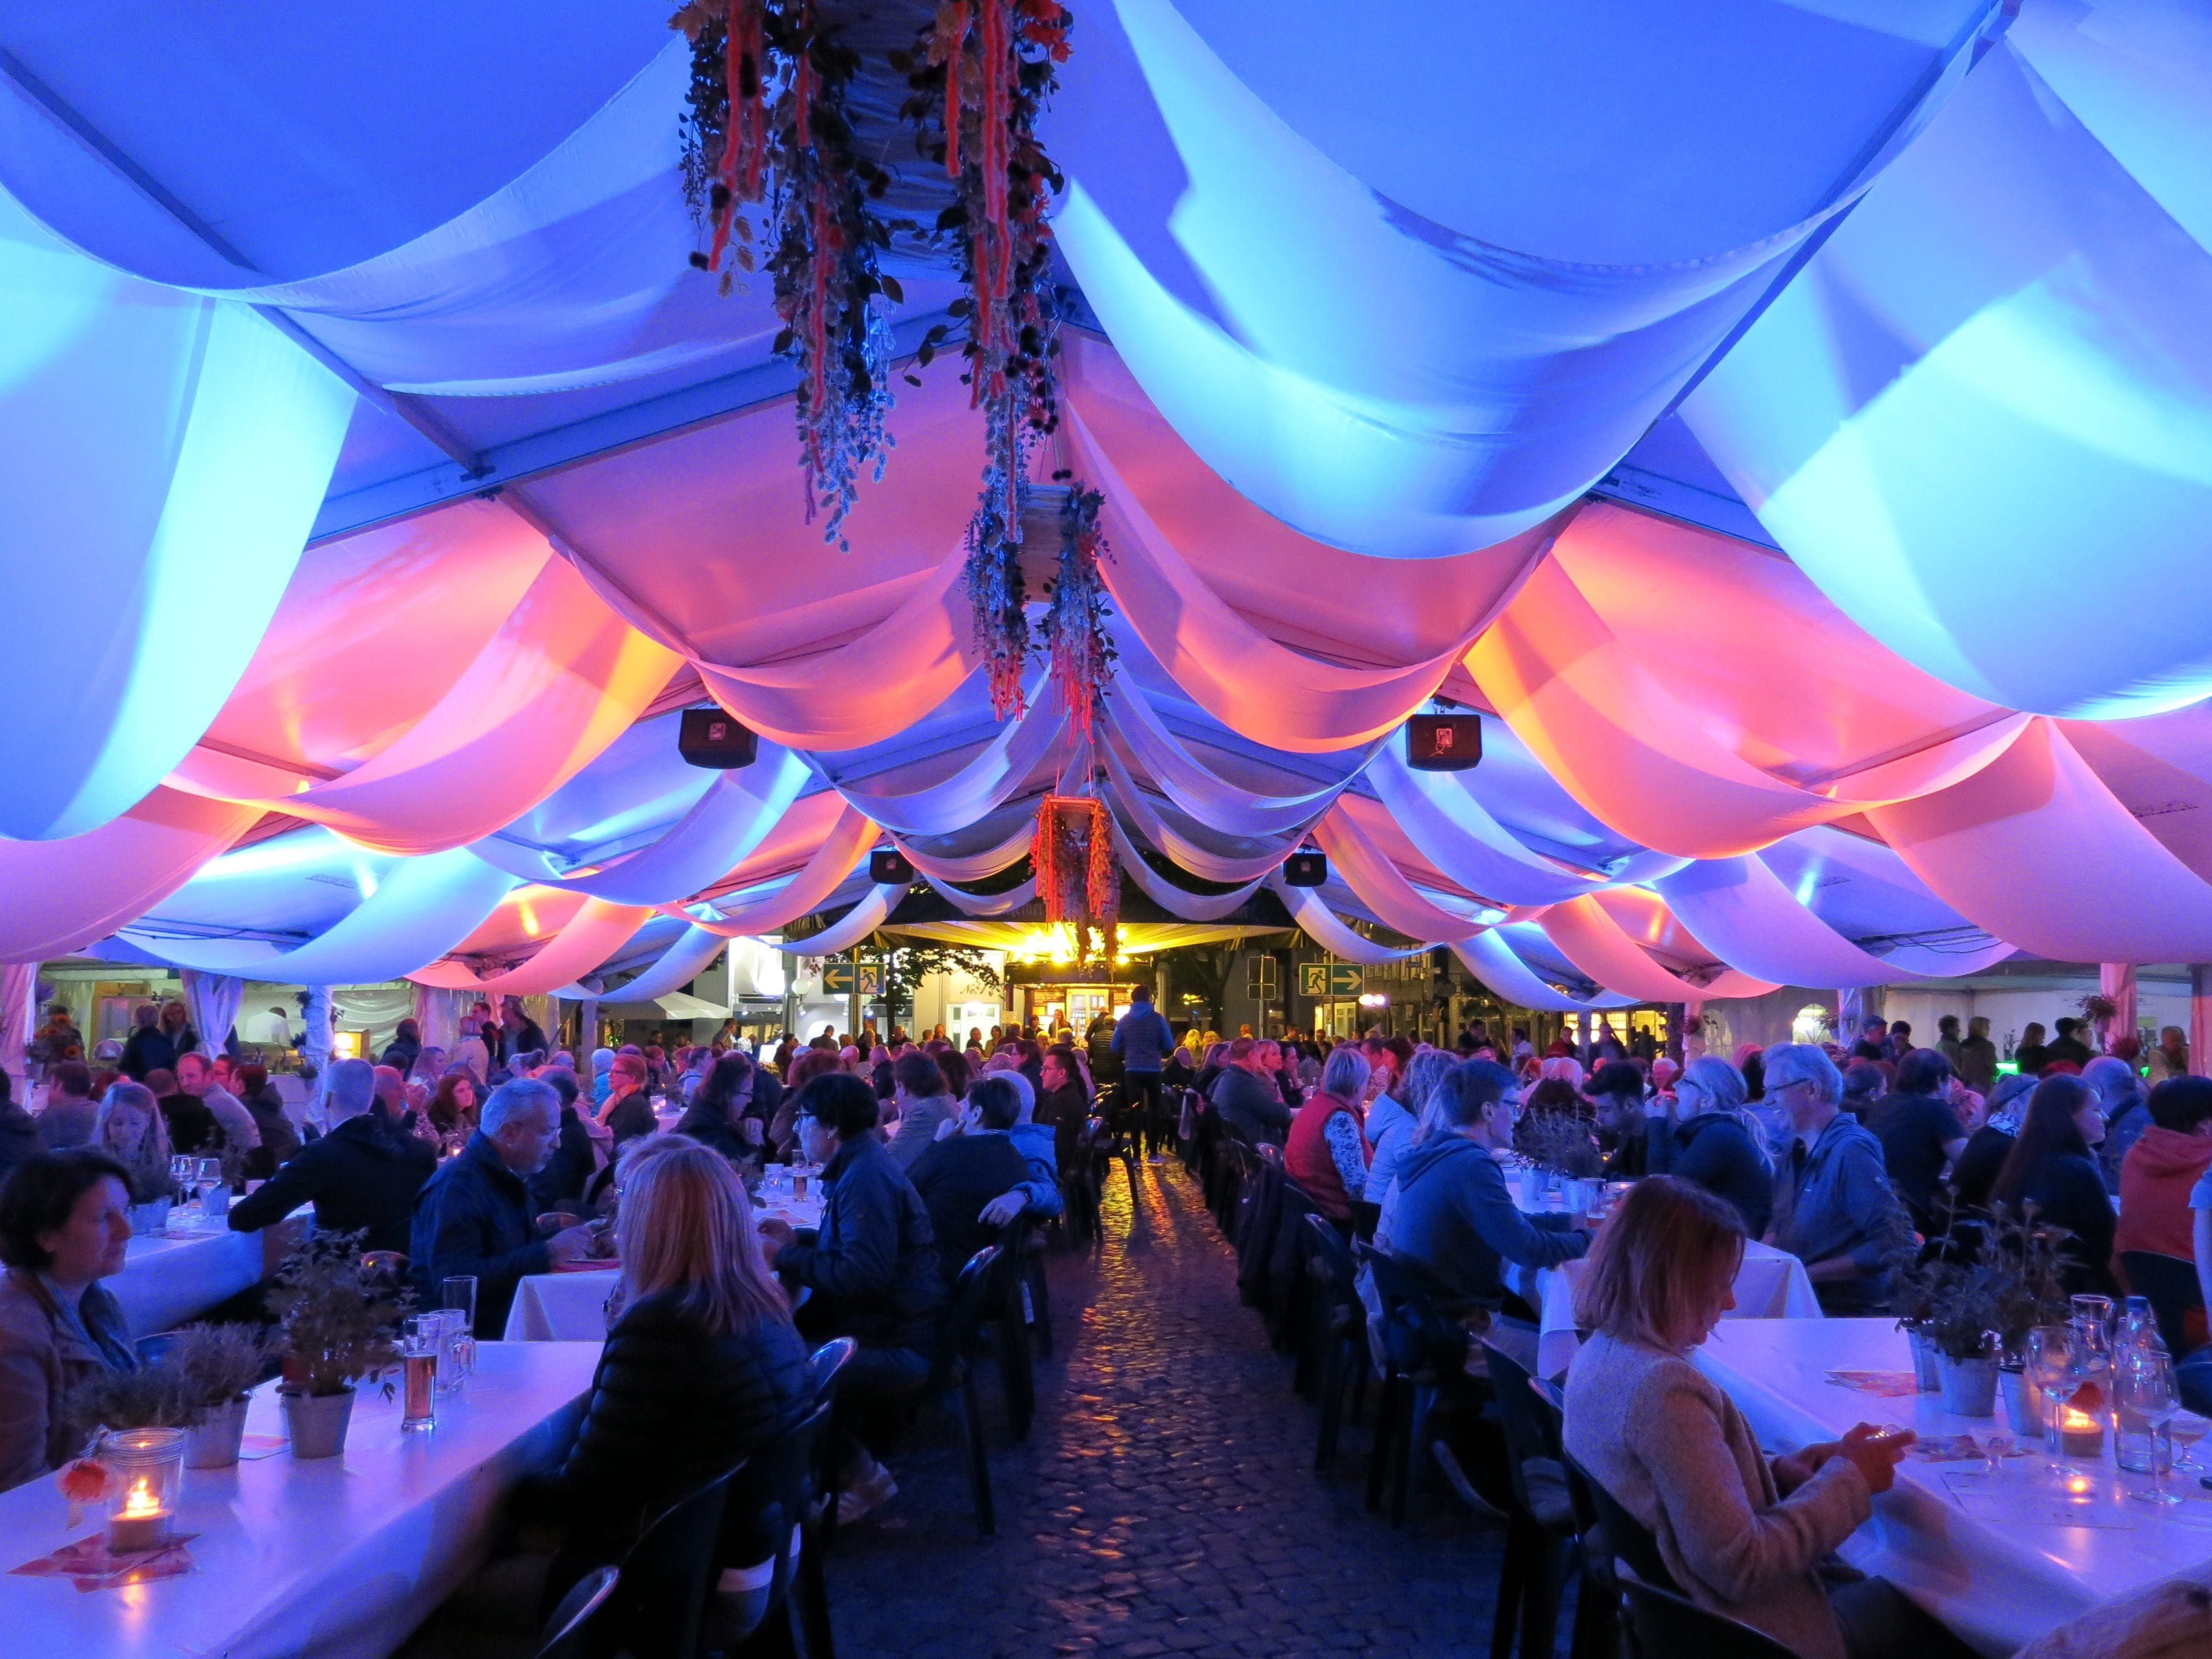 Bei Lippstadt Culinaire vom 1. bis 3. September können bBesucher auf dem Rathausplatz Schlemmen und Musik genießen. Foto - Kultur Werbung Lippstadt